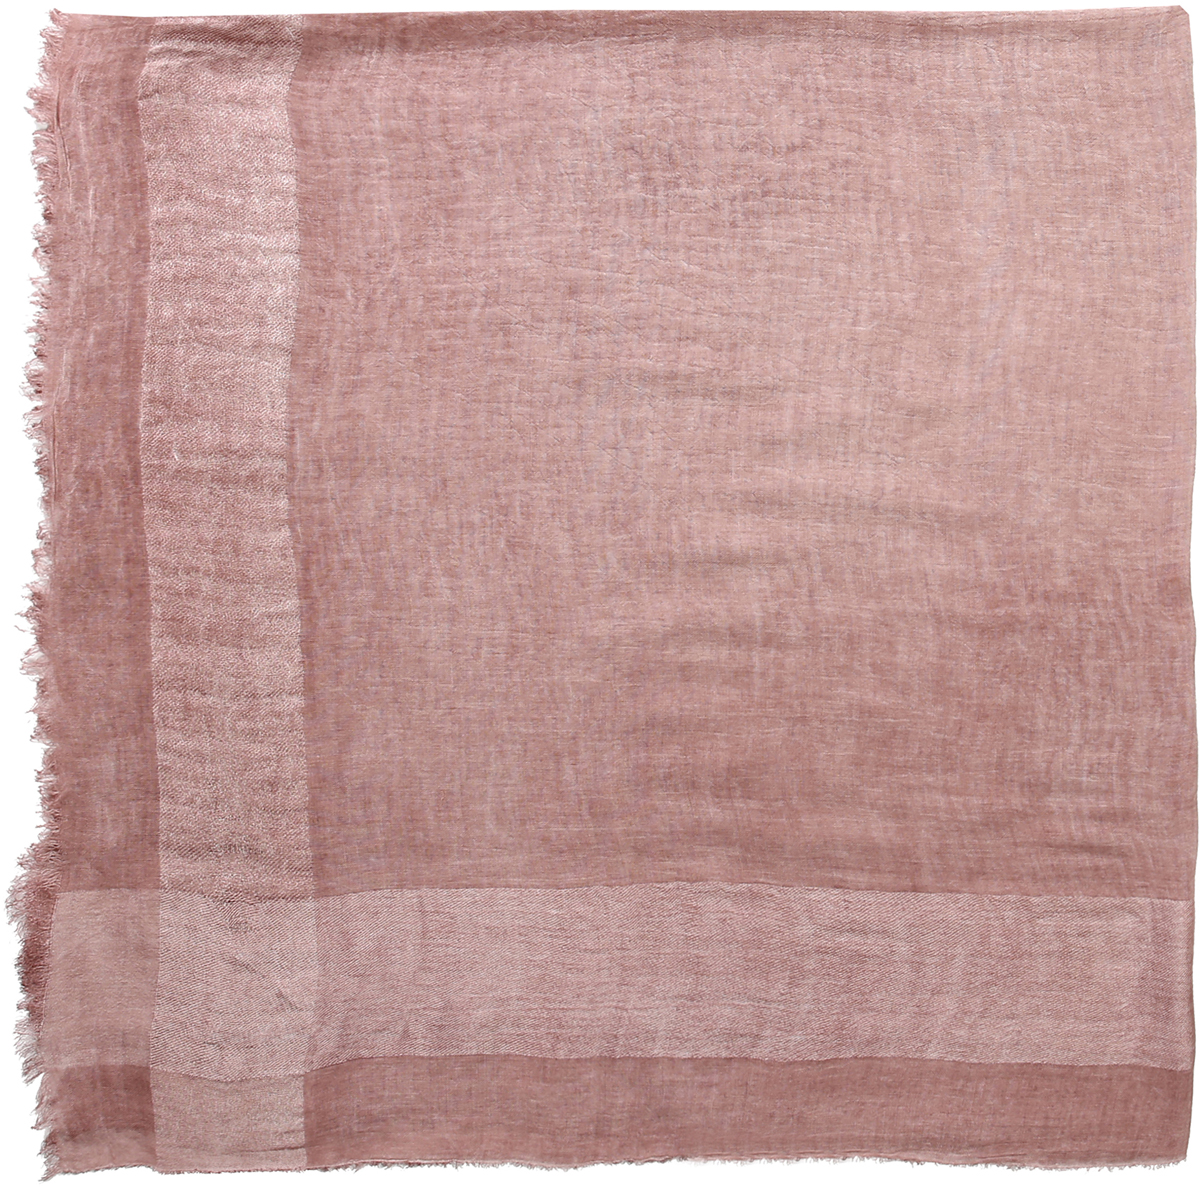 Платок женский Модные истории, цвет: розовый. 23/0581/117. Размер 135 см x 135 см